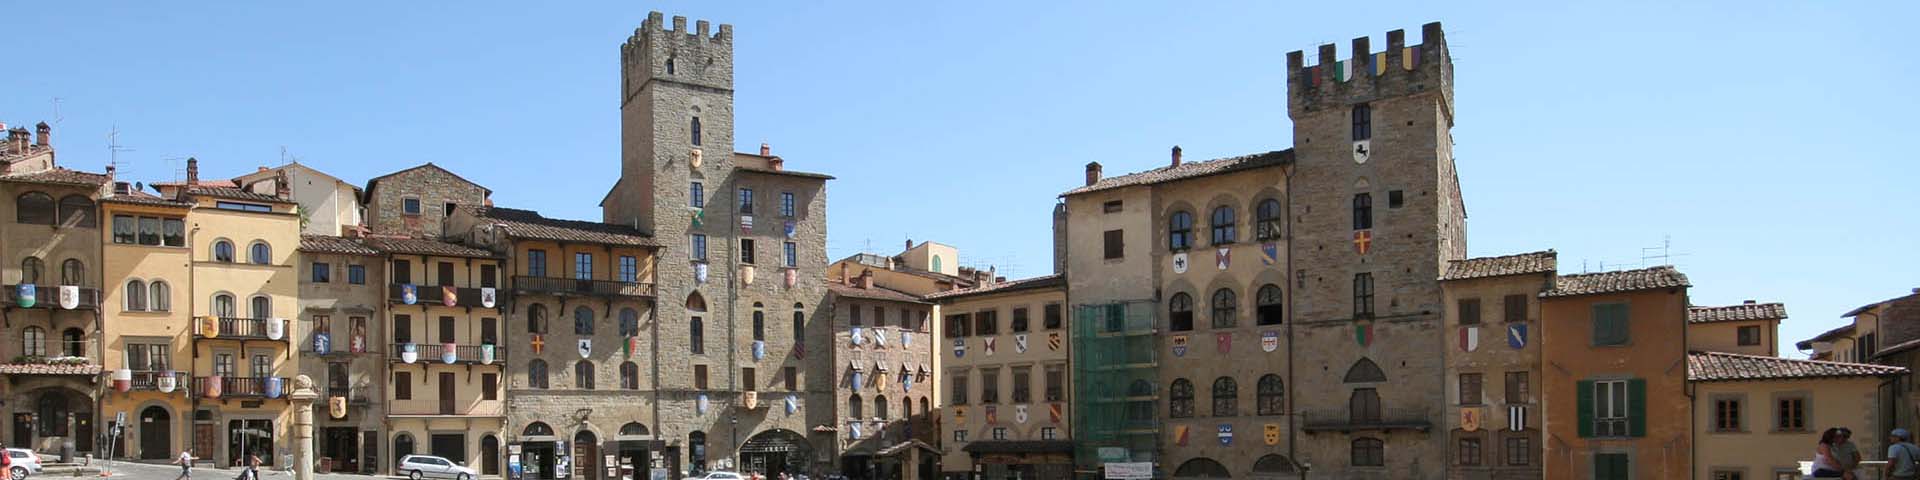 Aretino - Arezzo Piazza Grande